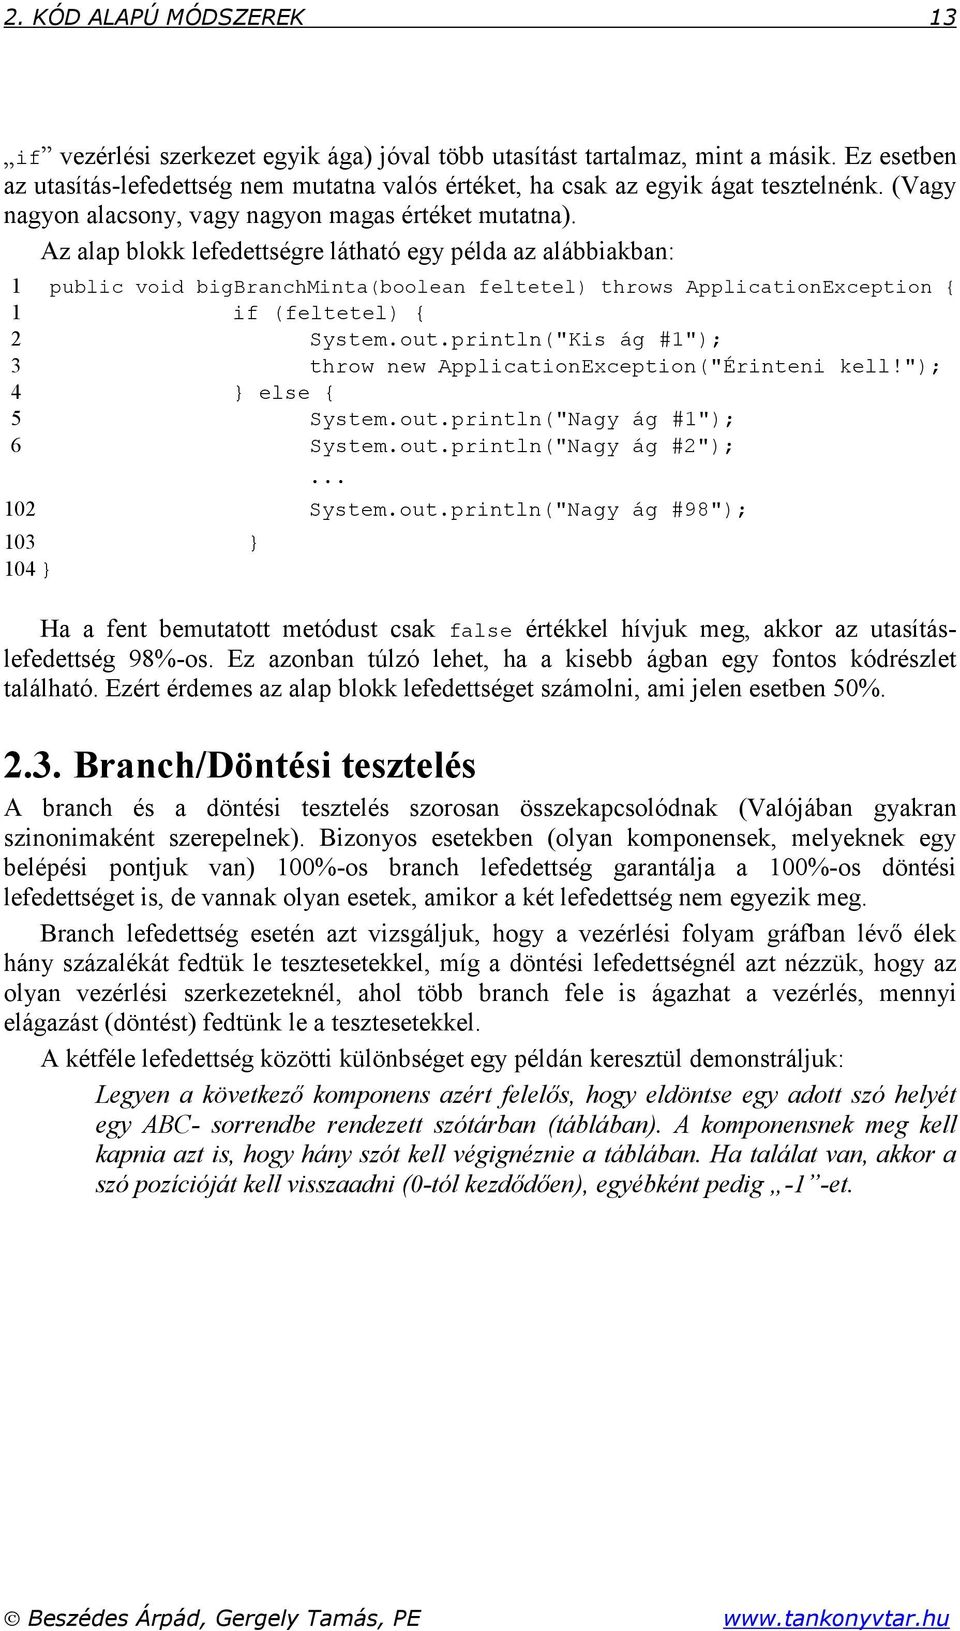 Az alap blokk lefedettségre látható egy példa az alábbiakban: 1 public void bigbranchminta(boolean feltetel) throws ApplicationException { 1 if (feltetel) { 2 System.out.